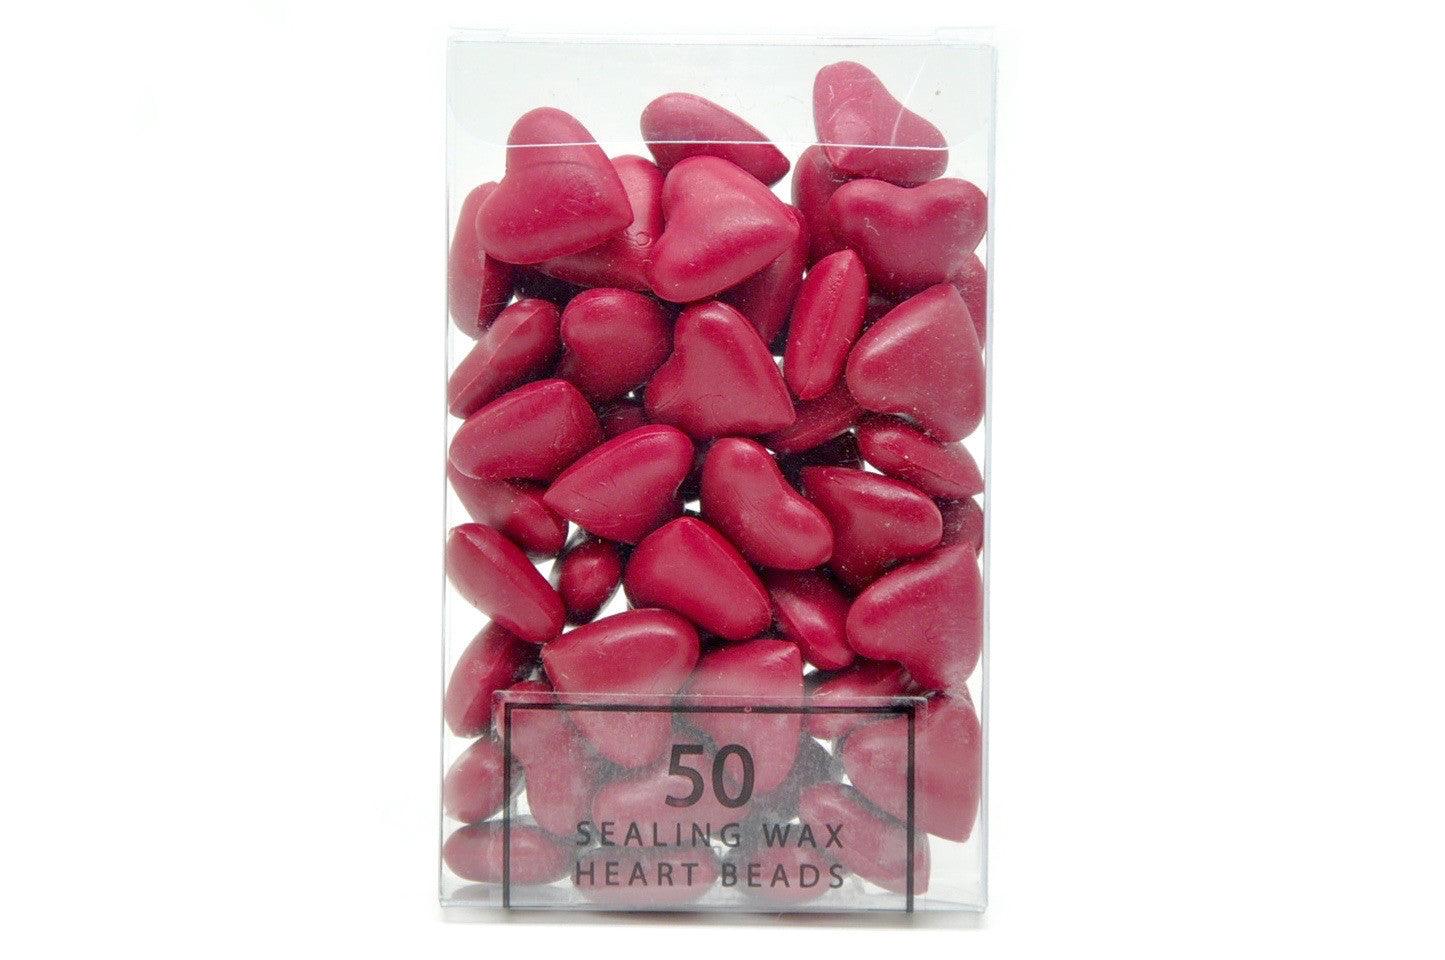 Rose Red Sealing Wax Heart Bead - Backtozero B20 - Heart Bead, Heart Wax, Rose Red, sale, Sealing Wax, Wax Bead